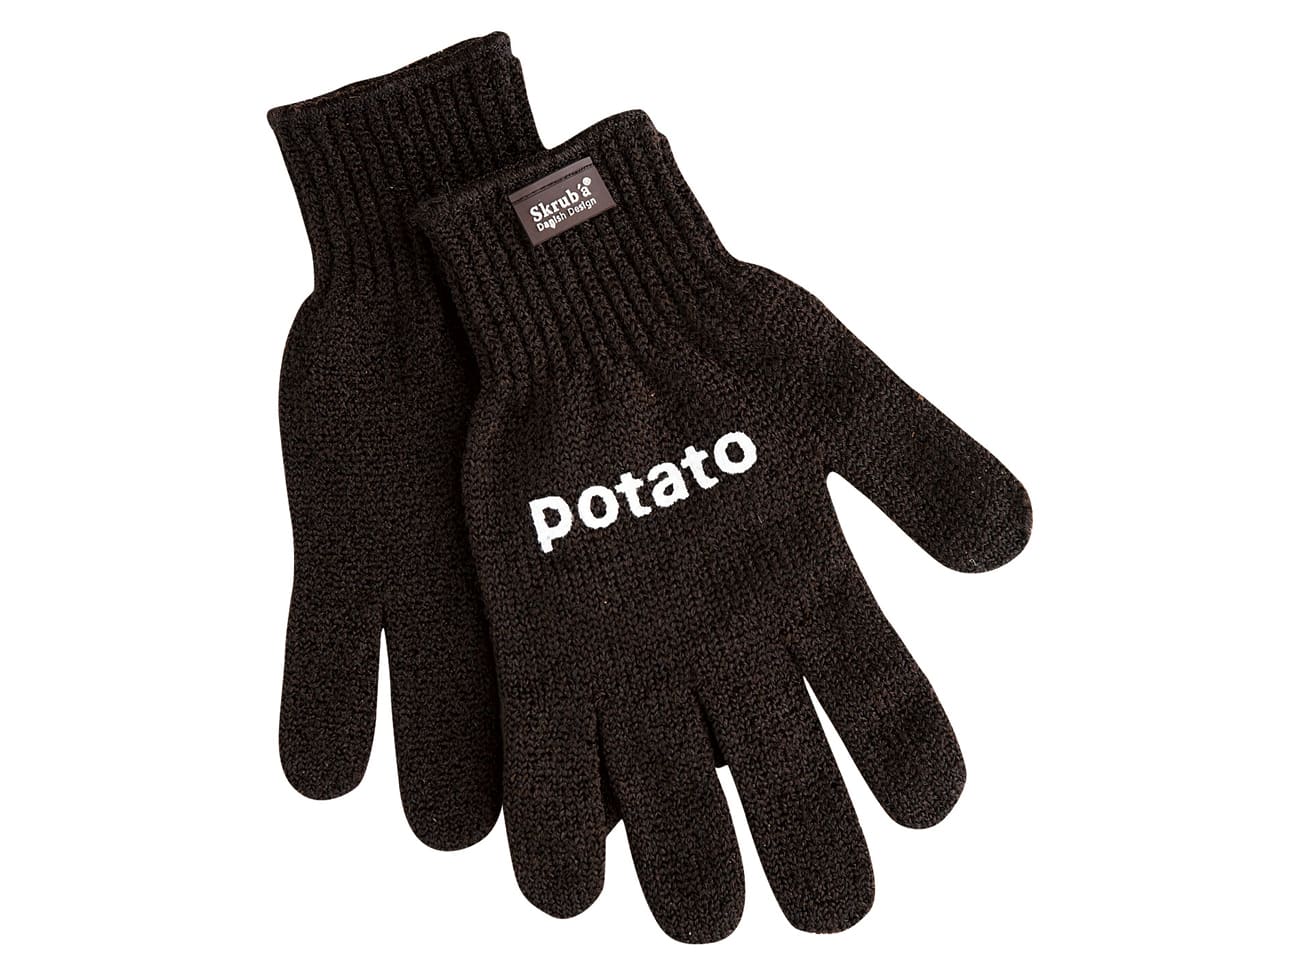 Cuisipro gants de cuisine taille S, 5 doigts, noir-rouge - Maintenant chez